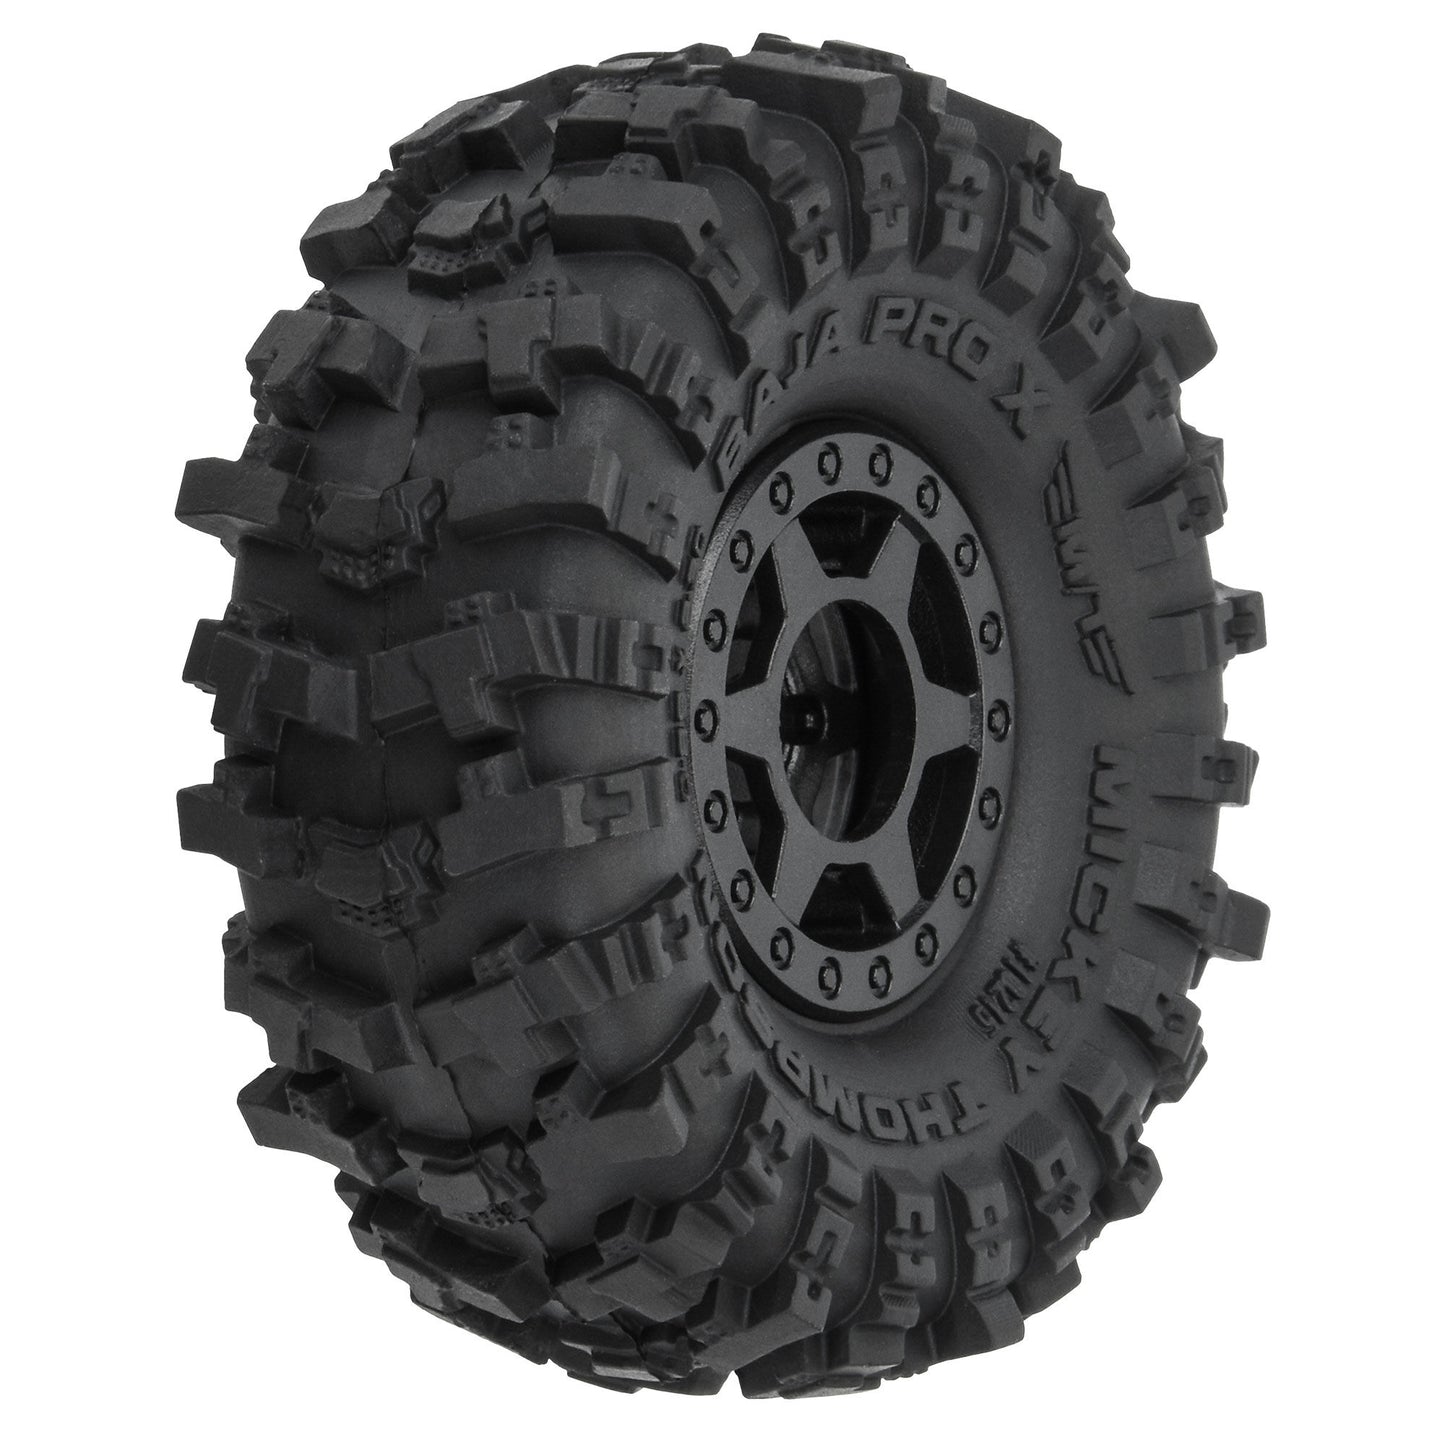 1/24 Pro-Line MT Baja Pro X F/R 1.0" Tires MTD 7mm Blk (4)